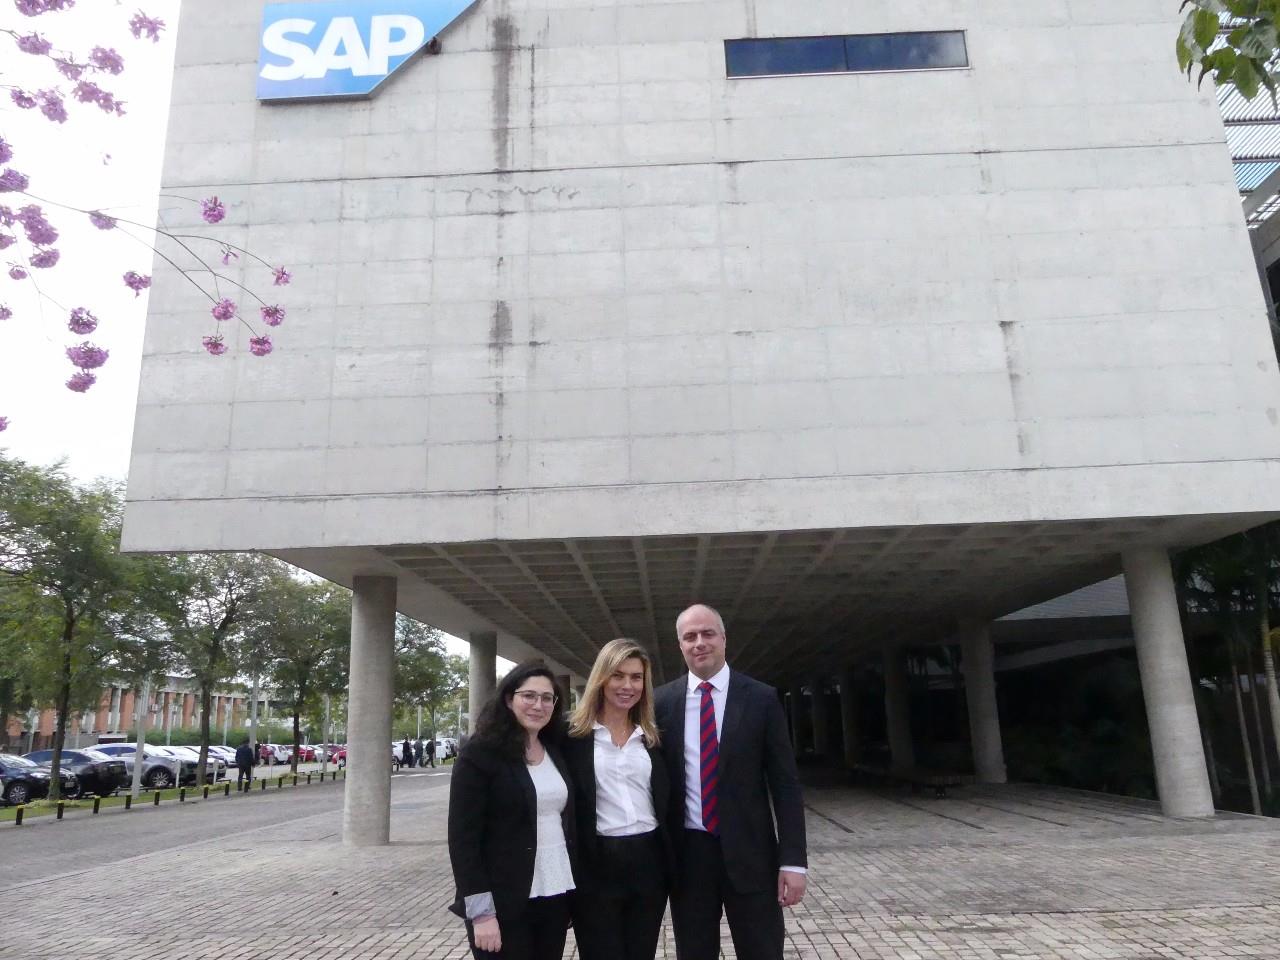 A responsável pela área de Marketing da Concur, Neemat Eid, a diretora geral da Concur no Brasil, Valeria Soska, e diretor de Serviços da Concur no Brasil, Jean Amadei, todos em frente ao SAP Labs Latina America